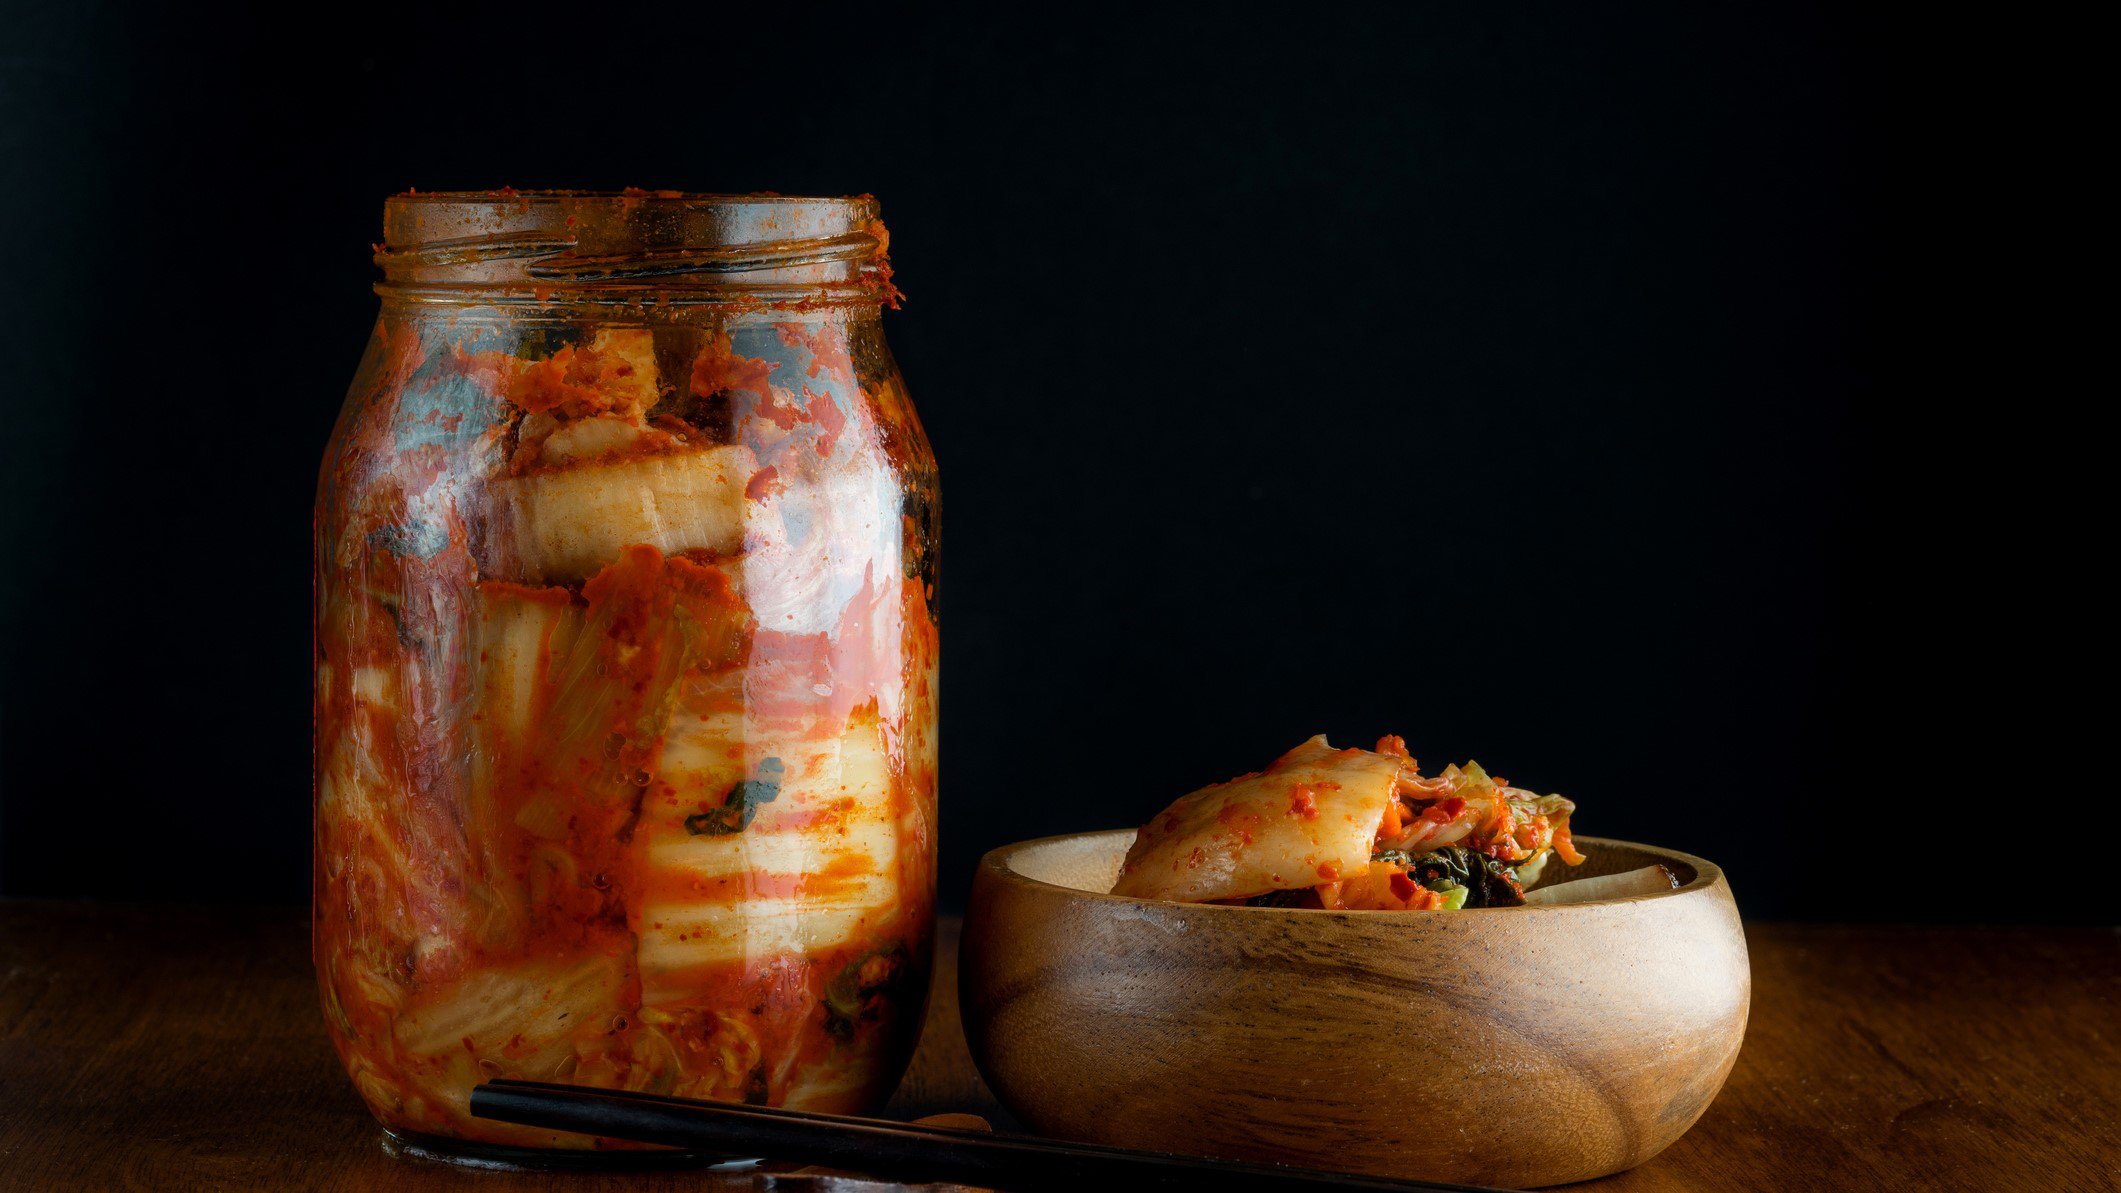 Wirsing haltbar machen mit Wirsing-Kimchi im Glas. Daneben Holzschüssel mit Wirsing-Kimchi und Stäbchen. Frontalansicht.